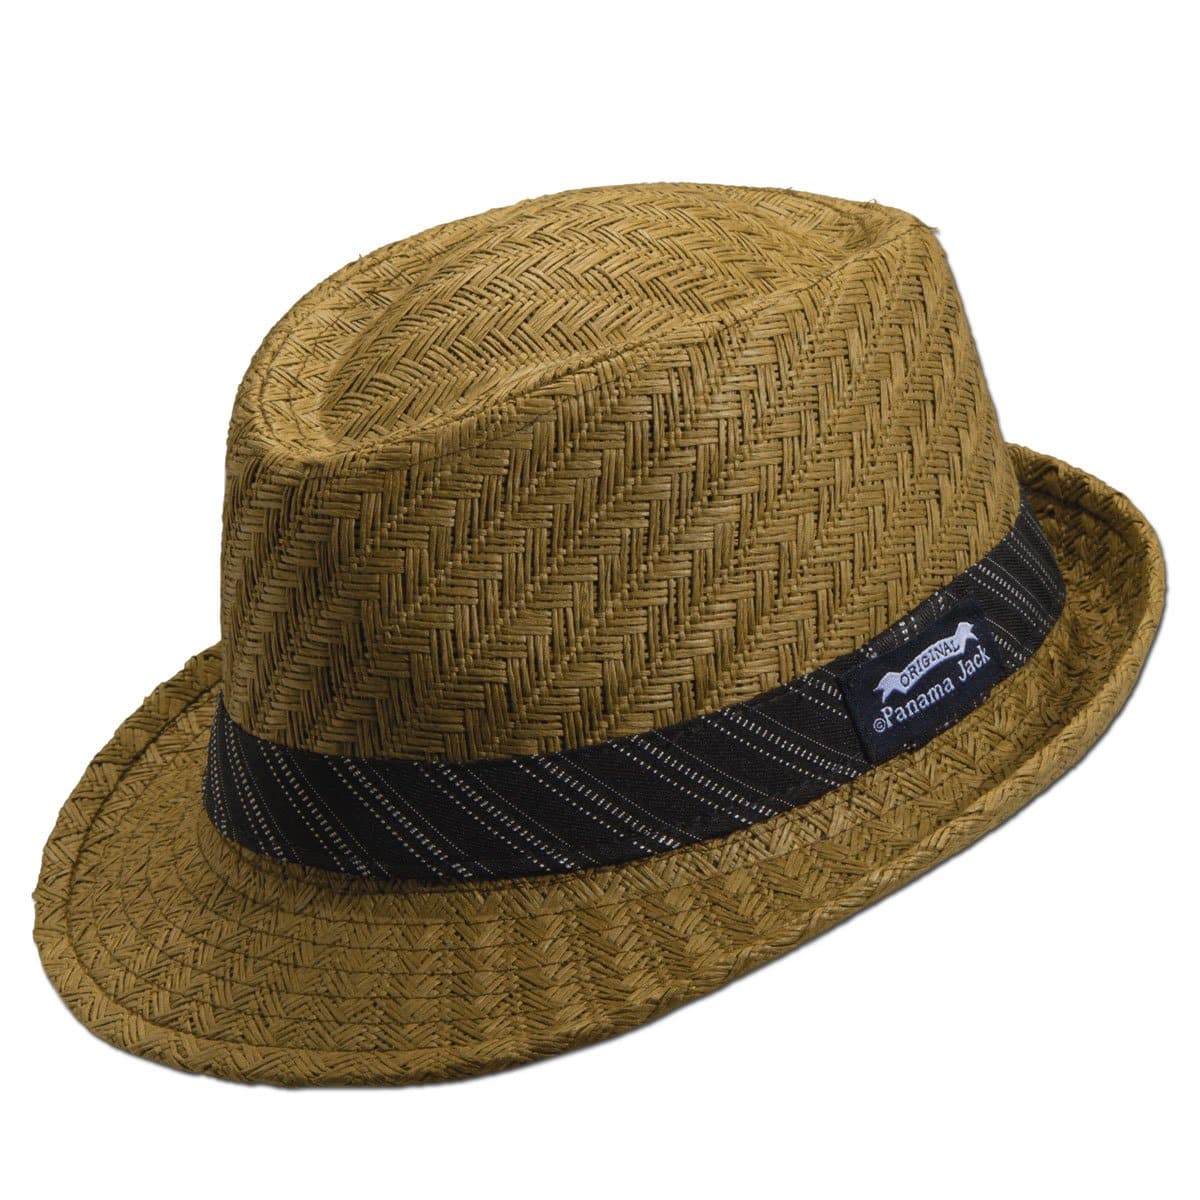 Intensief aardbeving ondernemer Striped Band Fedora Sun Hat – Panama Jack®